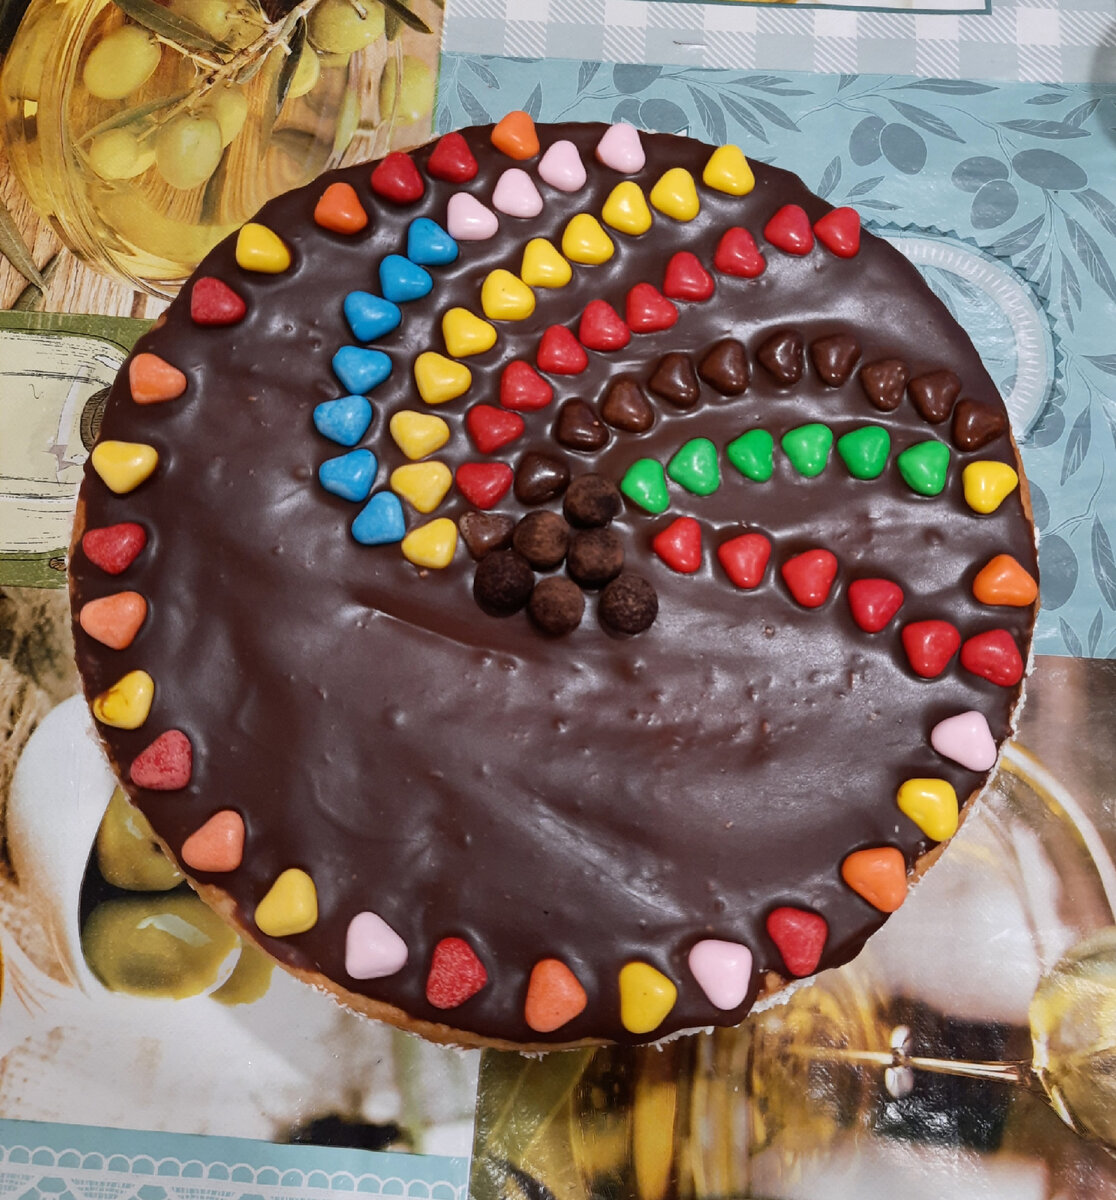 Шоколадный пирог (более рецептов с фото) - рецепты с фотографиями на Поварёteaside.ru